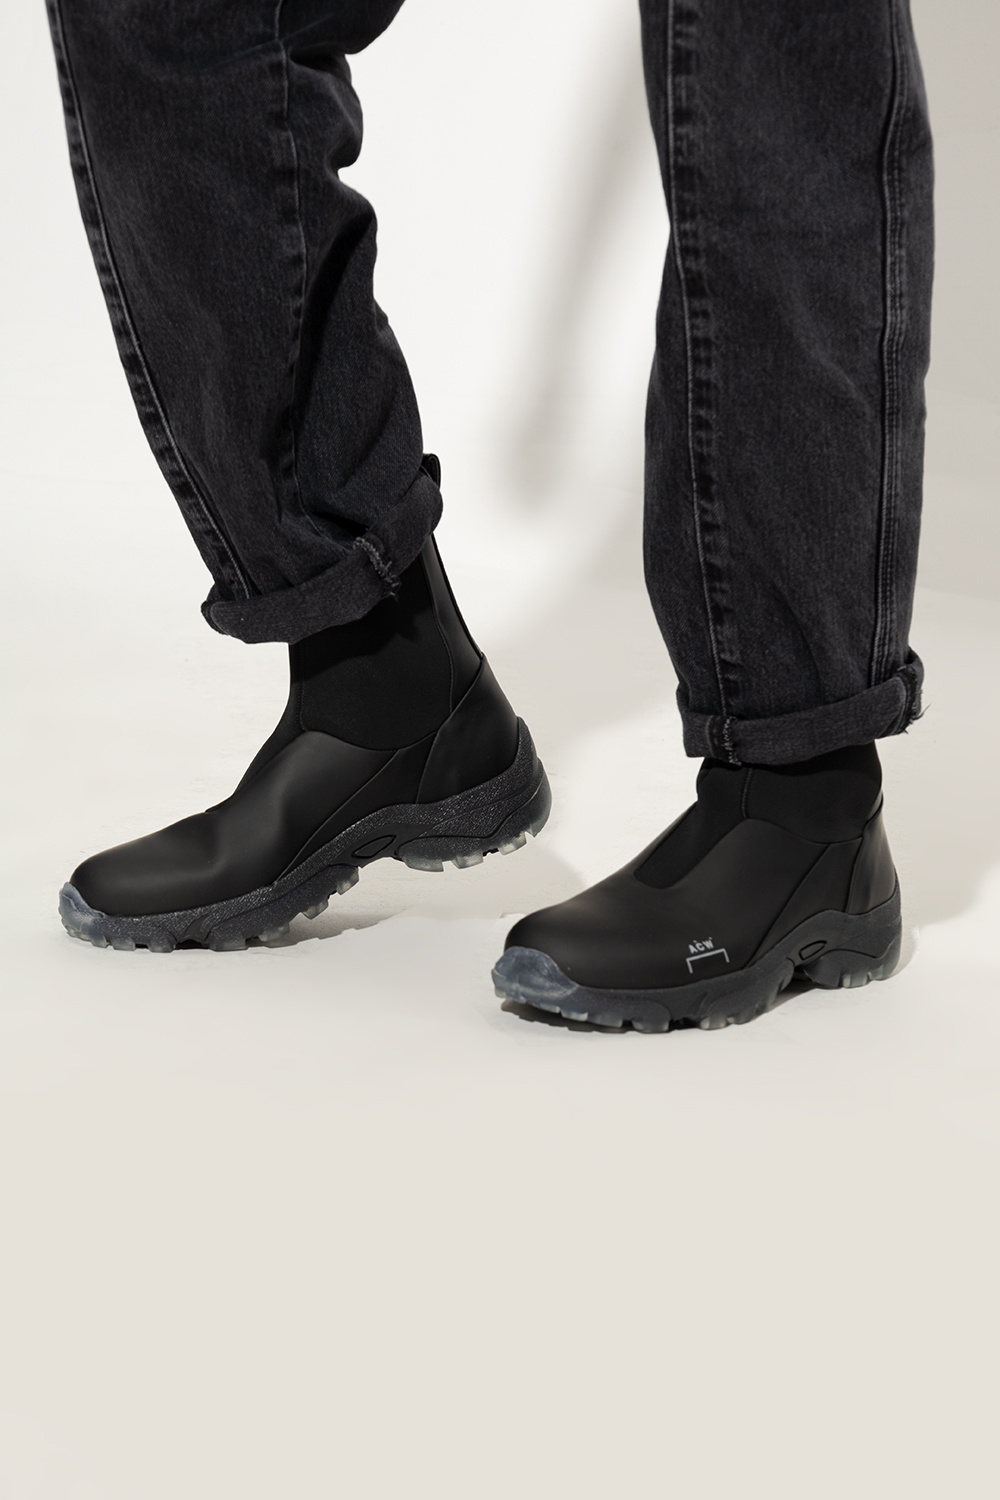 A-COLD-WALL* bonnie strappy stiletto sandals